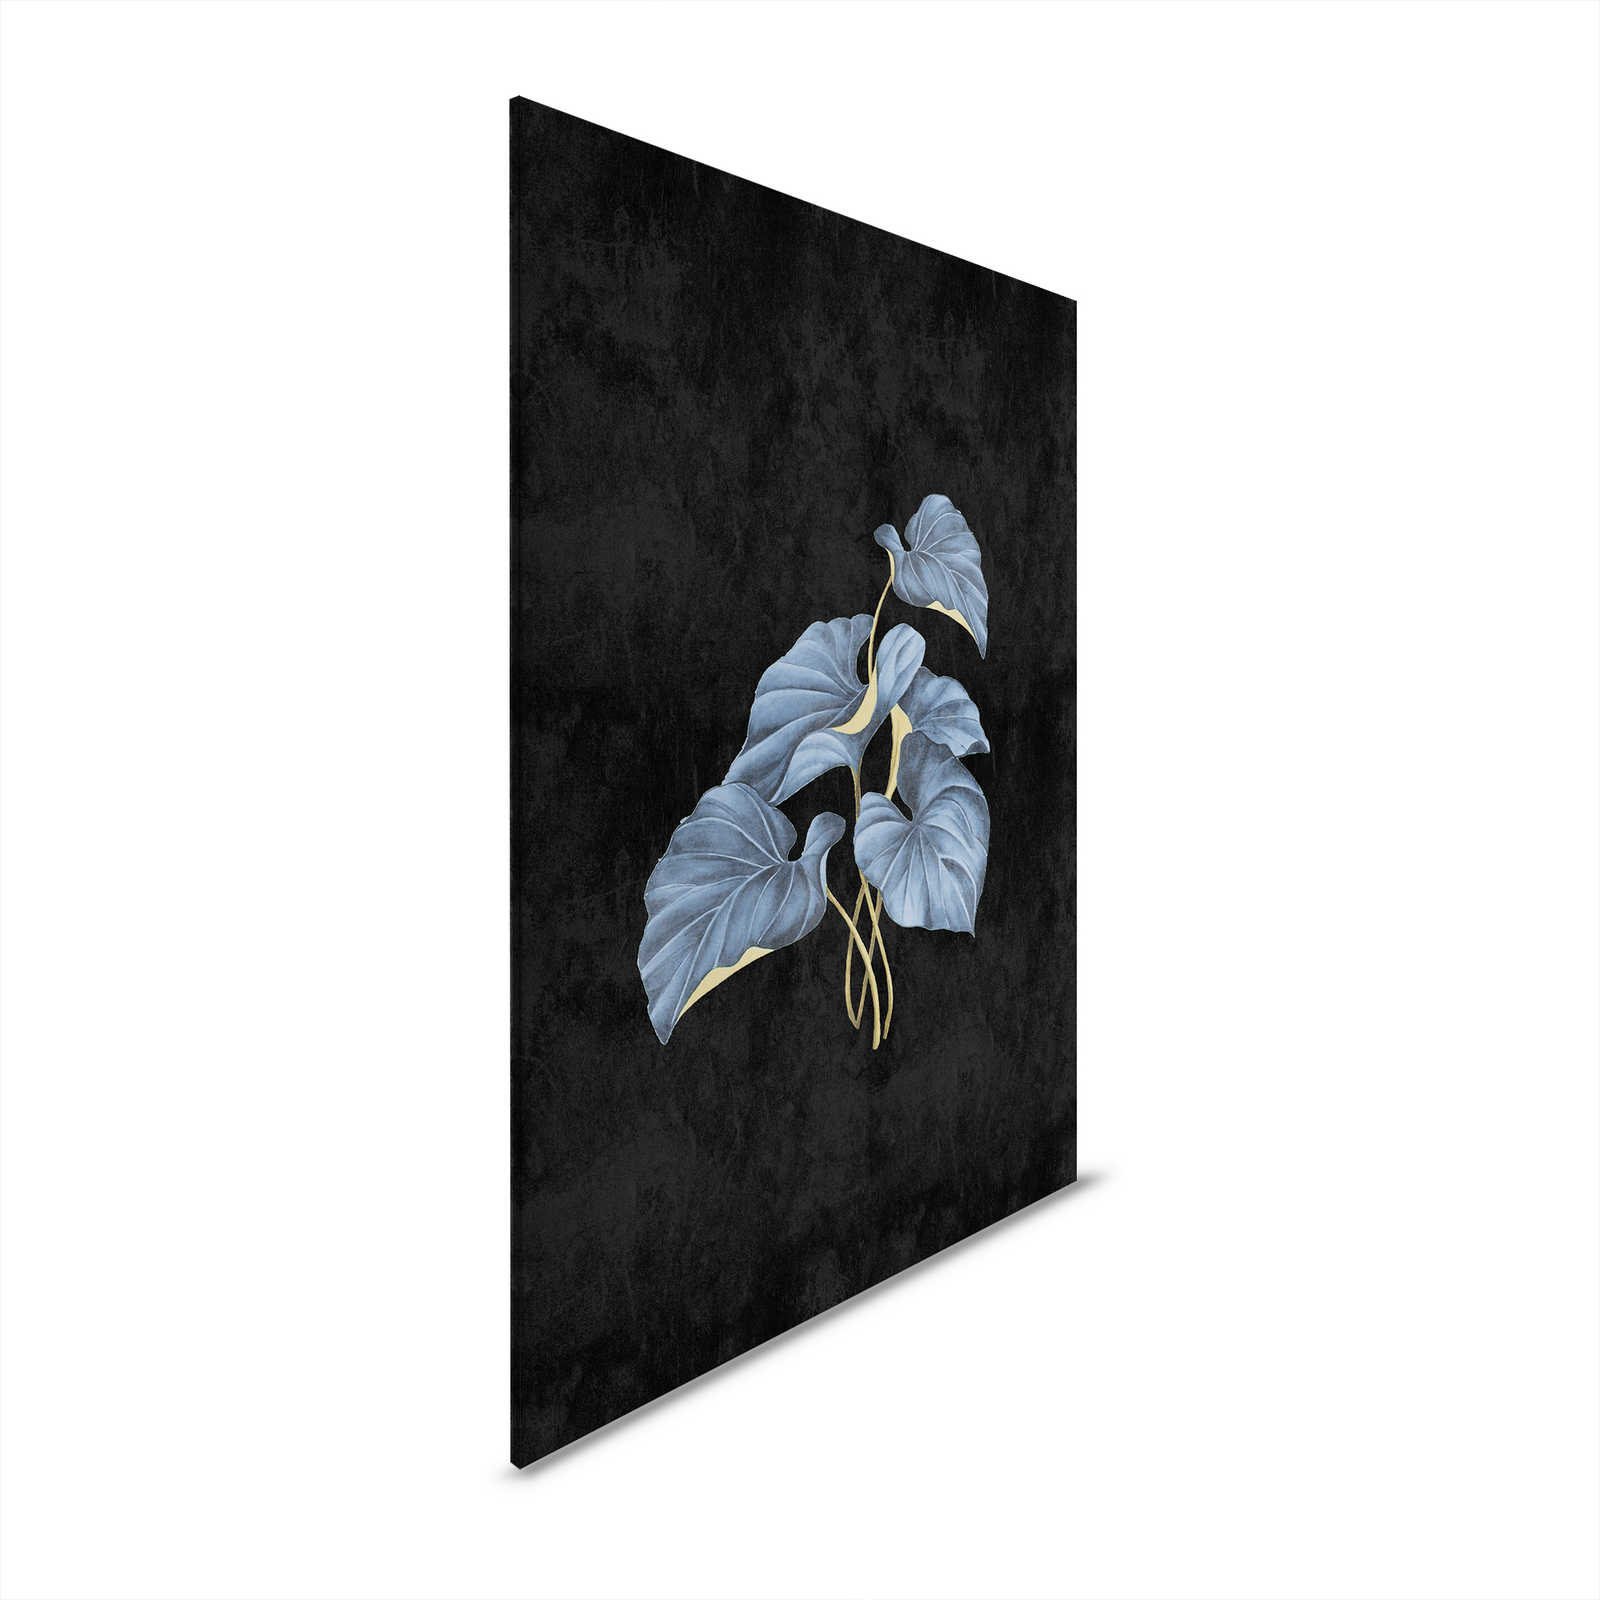 Fiji 1 - Zwart Canvas schilderij Blauwe bladeren met Gouden Accent - 0.80 m x 1.20 m
